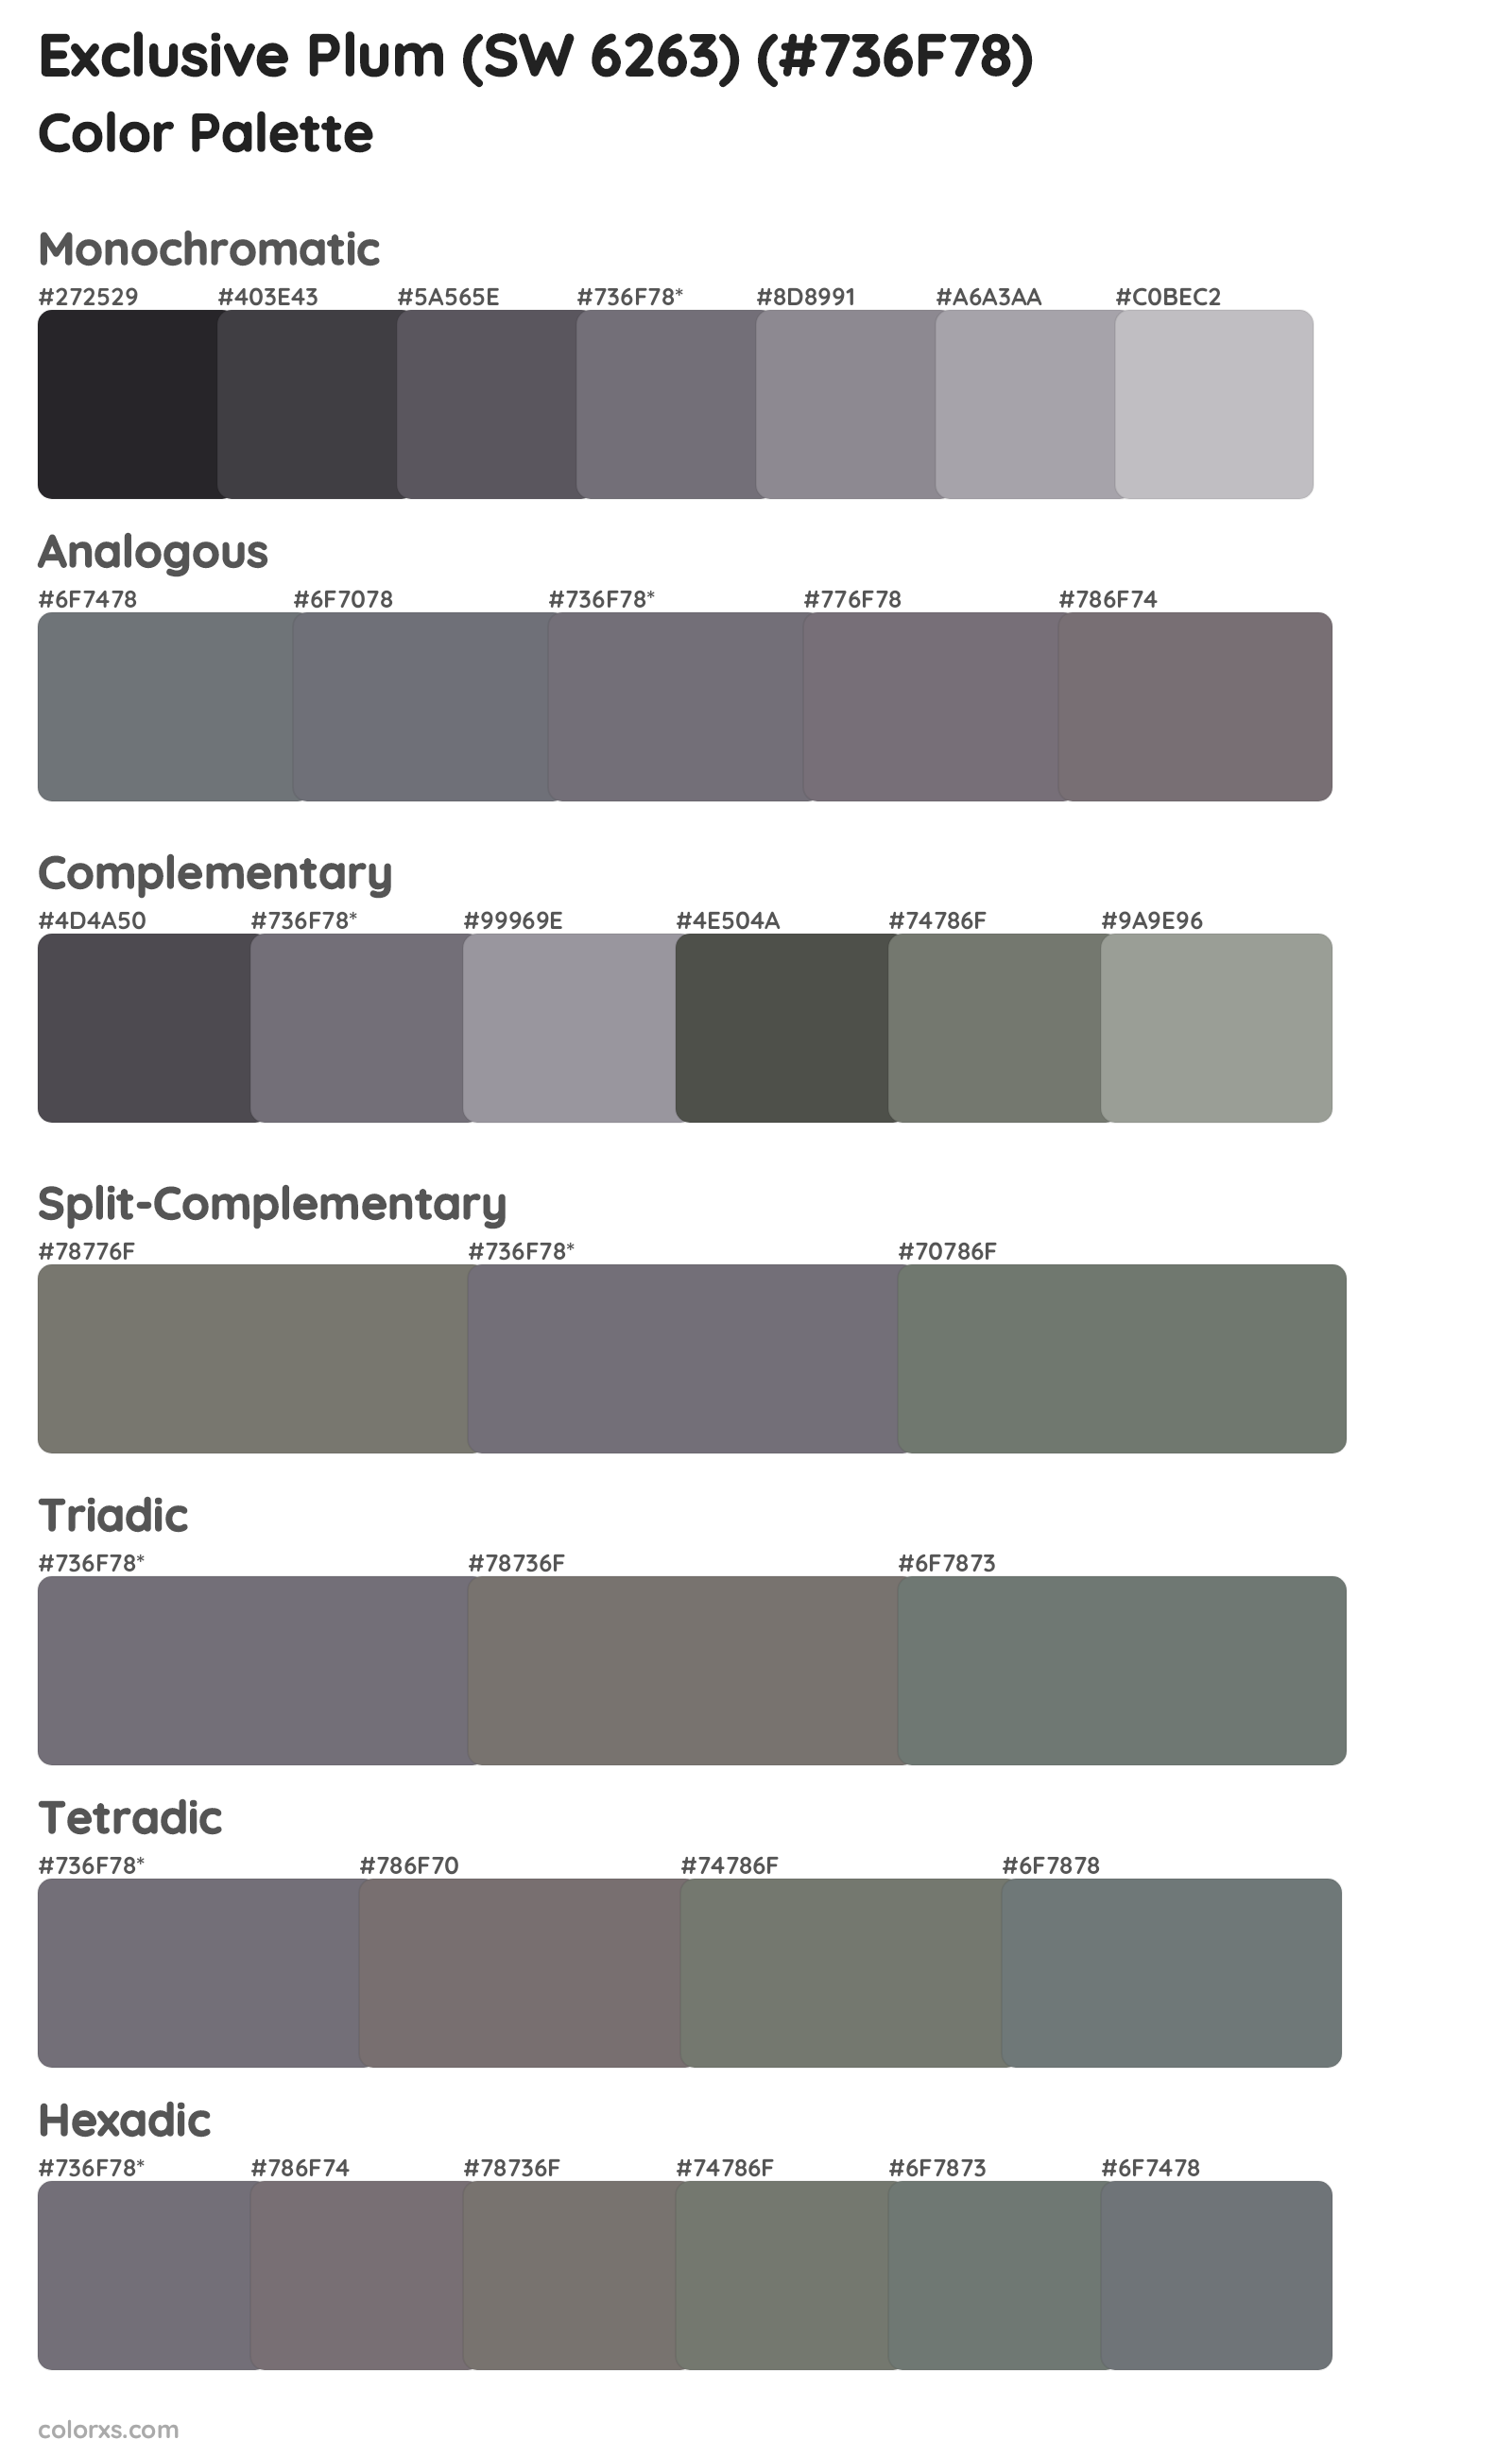 Exclusive Plum (SW 6263) Color Scheme Palettes